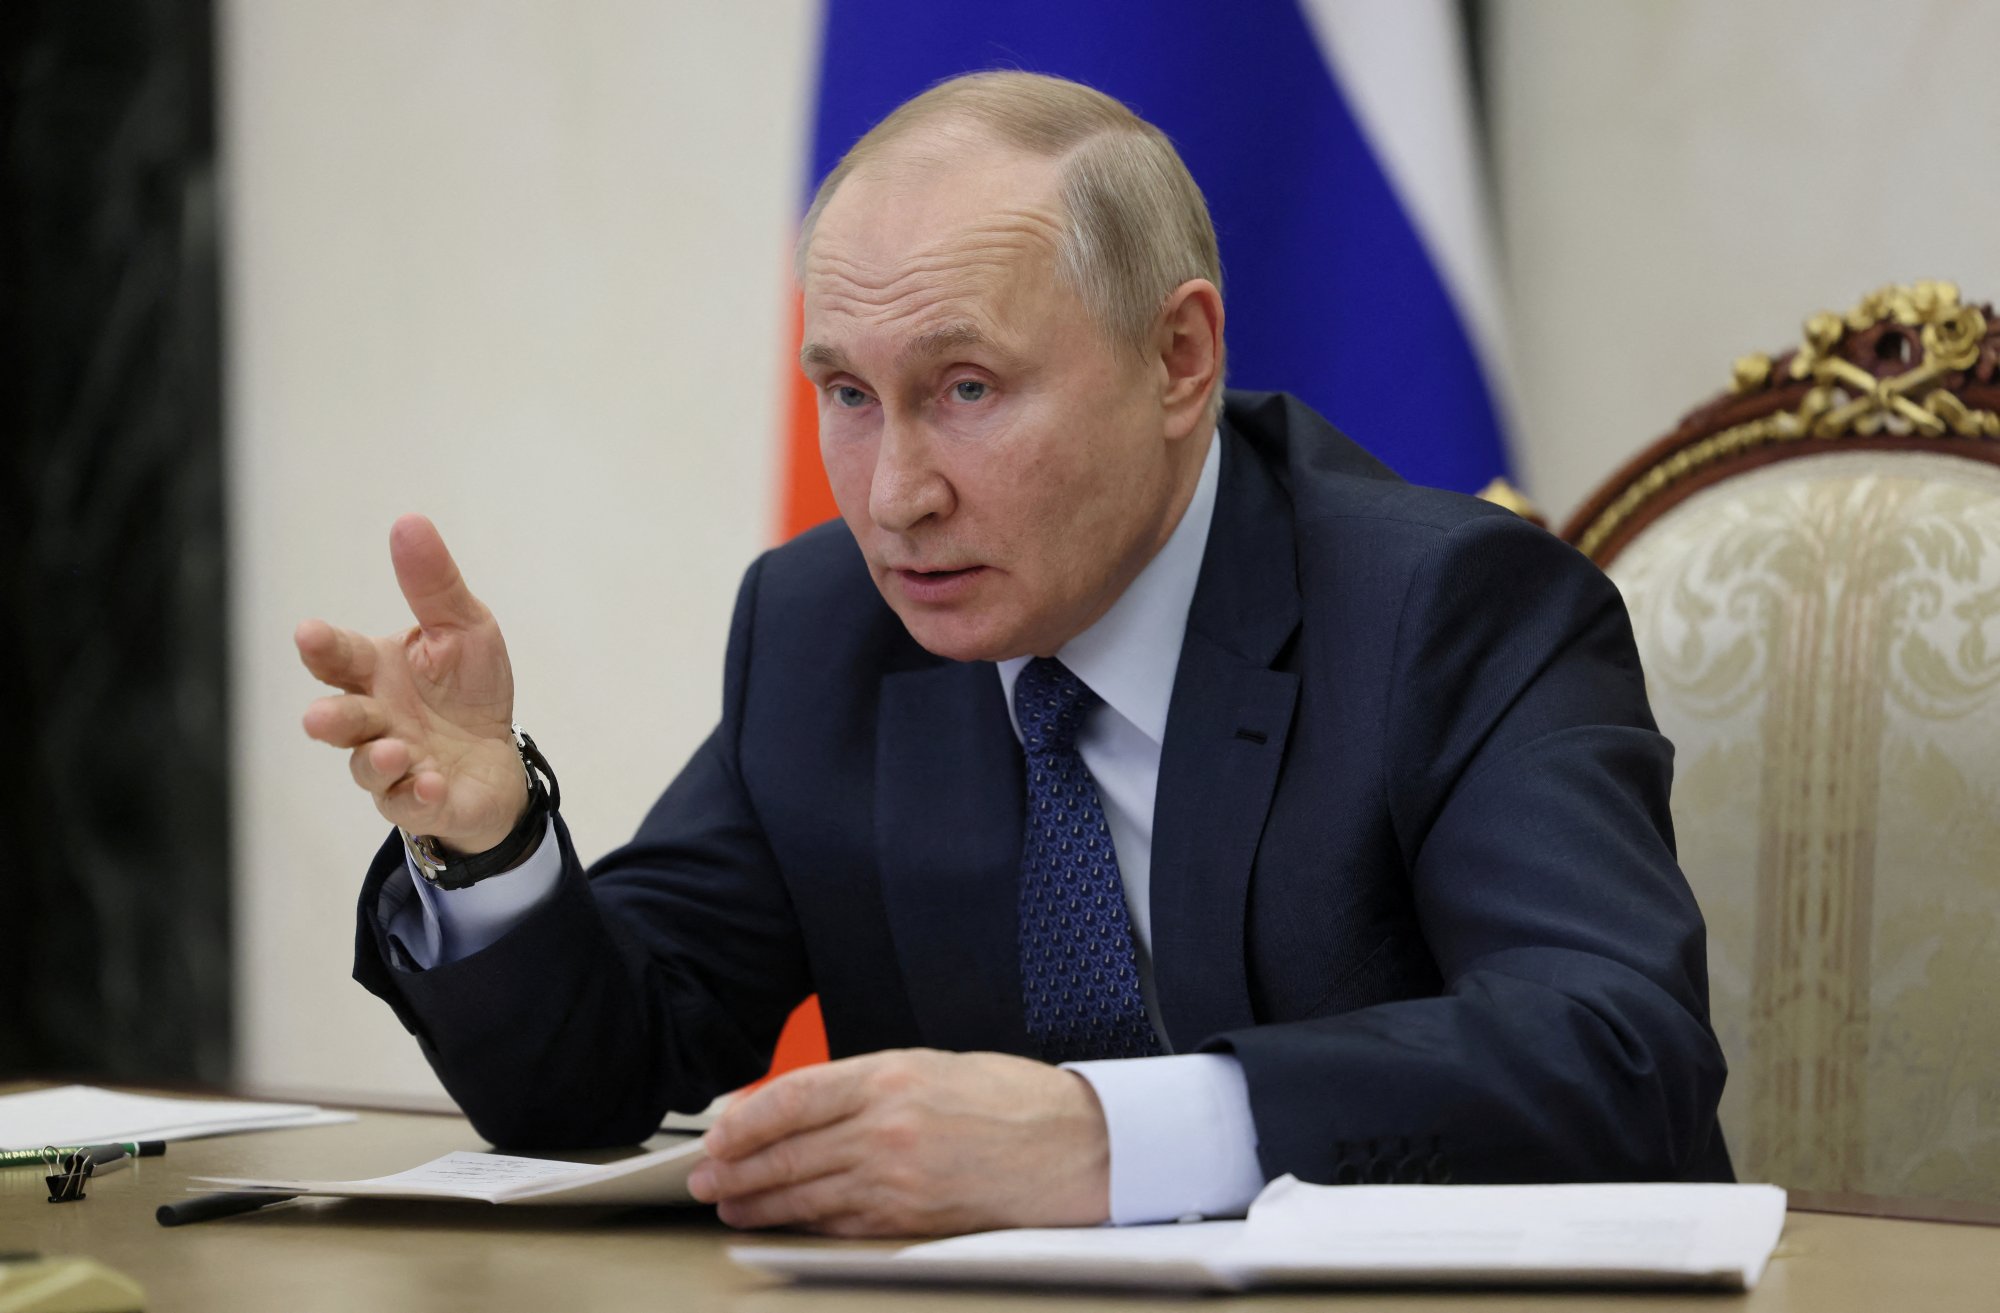 Εκλογές στη Ρωσία: Γιατί Ζελένσκι και ΝΑΤΟ απέτυχαν να ανατρέψουν τον Πούτιν